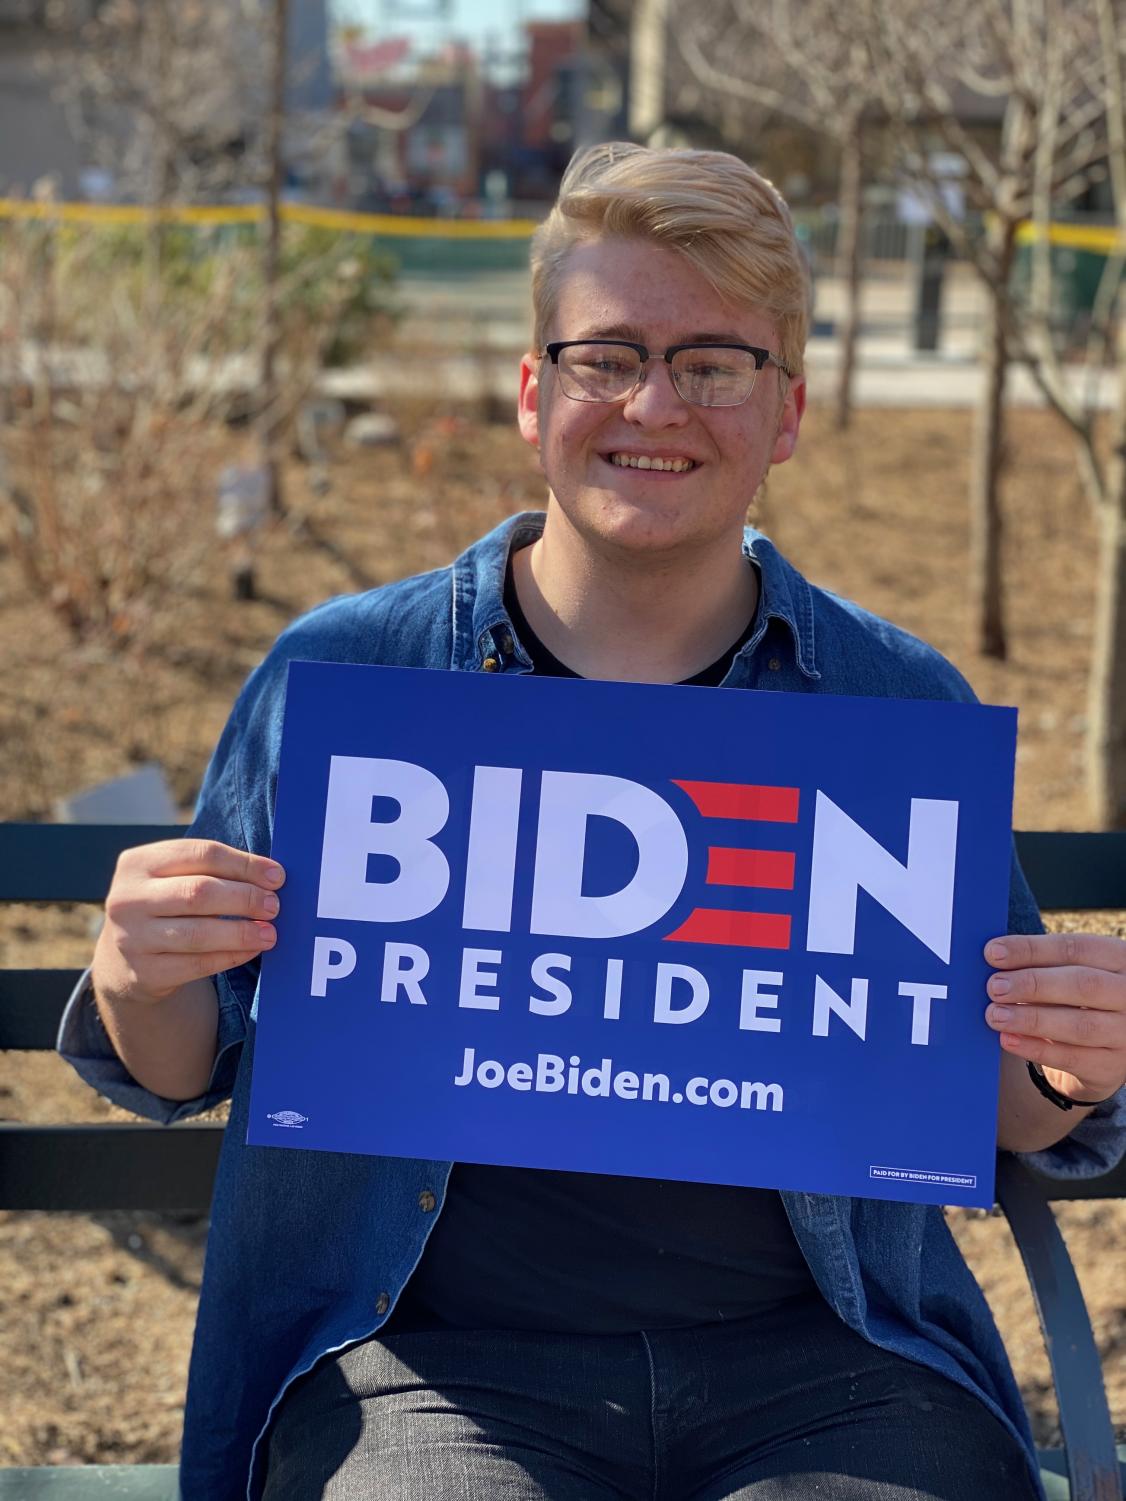 Zach Thompson – Biden supporter